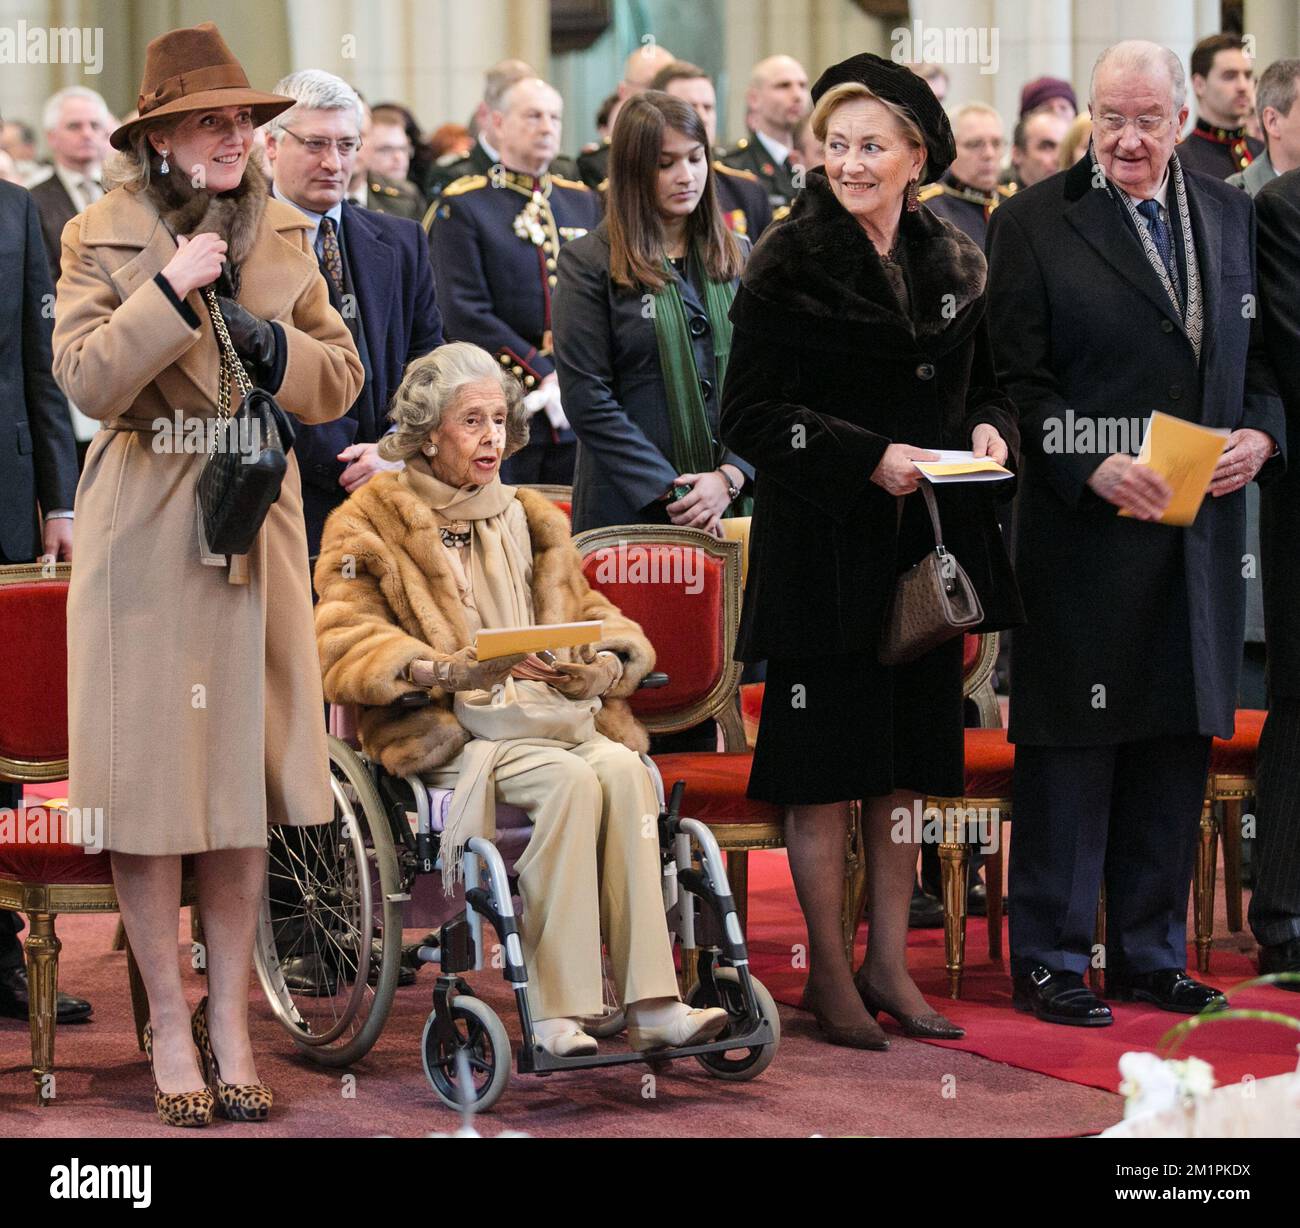 La princesse Astrid de Belgique, la reine Fabiola de Belgique, la princesse Astrid de Belgique et le roi Albert II de Belgique assistent à une messe spéciale pour commémorer les membres décédés de la famille royale belge, à l'onze-Lieve-Vrouwkerk - Eglise notre-Dame, à Laeken-Laken, Bruxelles. Banque D'Images